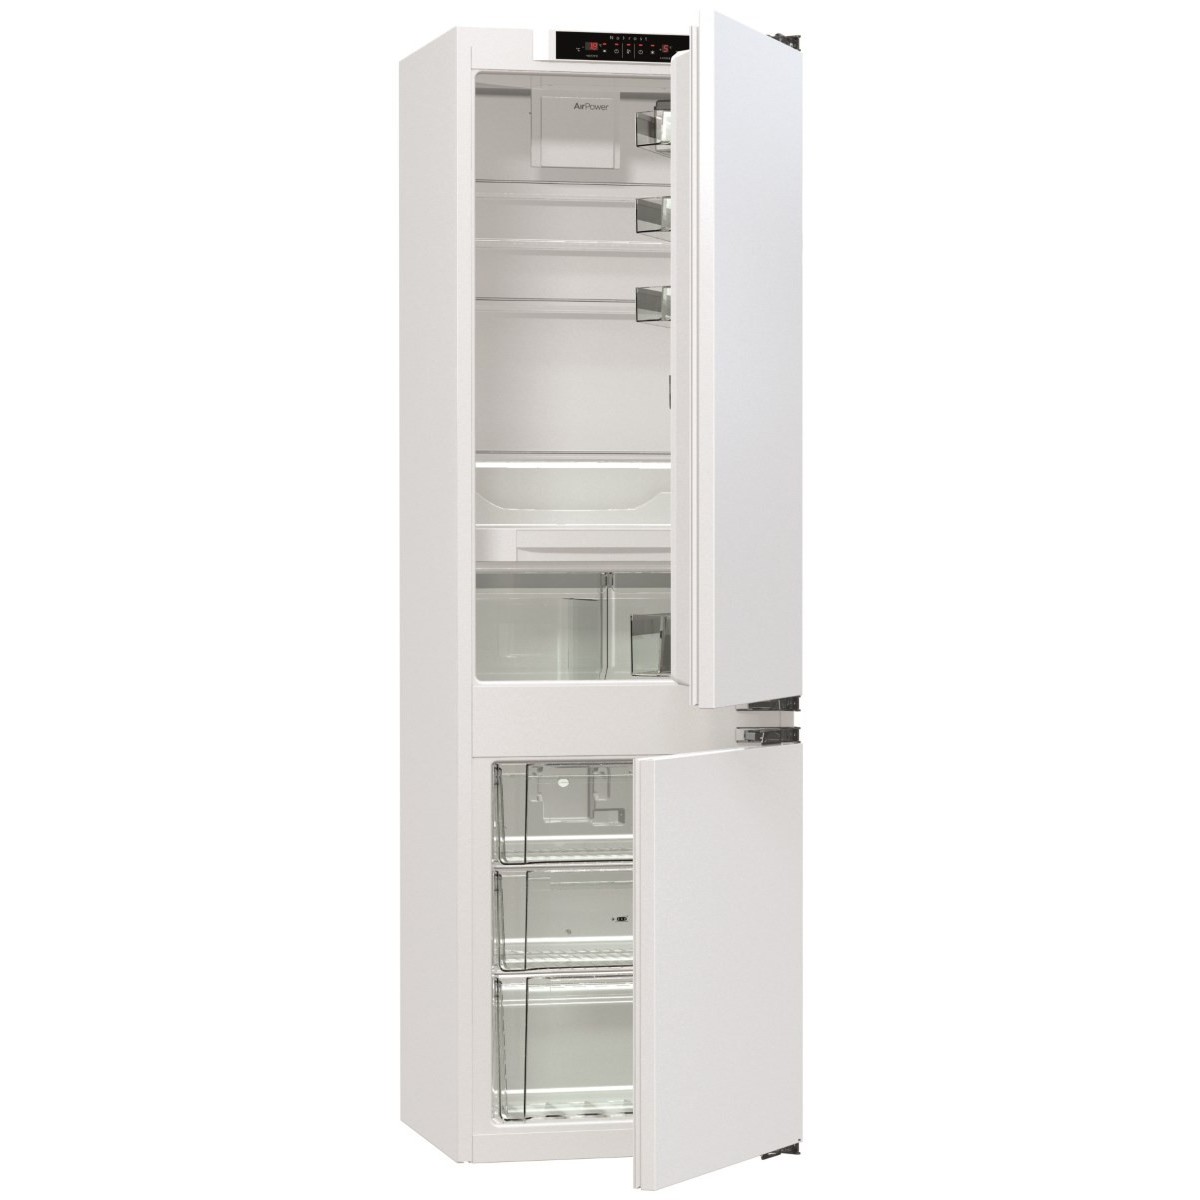 Gorenje nrki418fe0. Встраиваемый холодильник Gorenje nrki418fp2. Встраиваемый холодильник Gorenje nrki4182p1. Встраиваемый холодильник Gorenje GSC 27178 F. Gorenje nrki418fp2 схема встраивания.